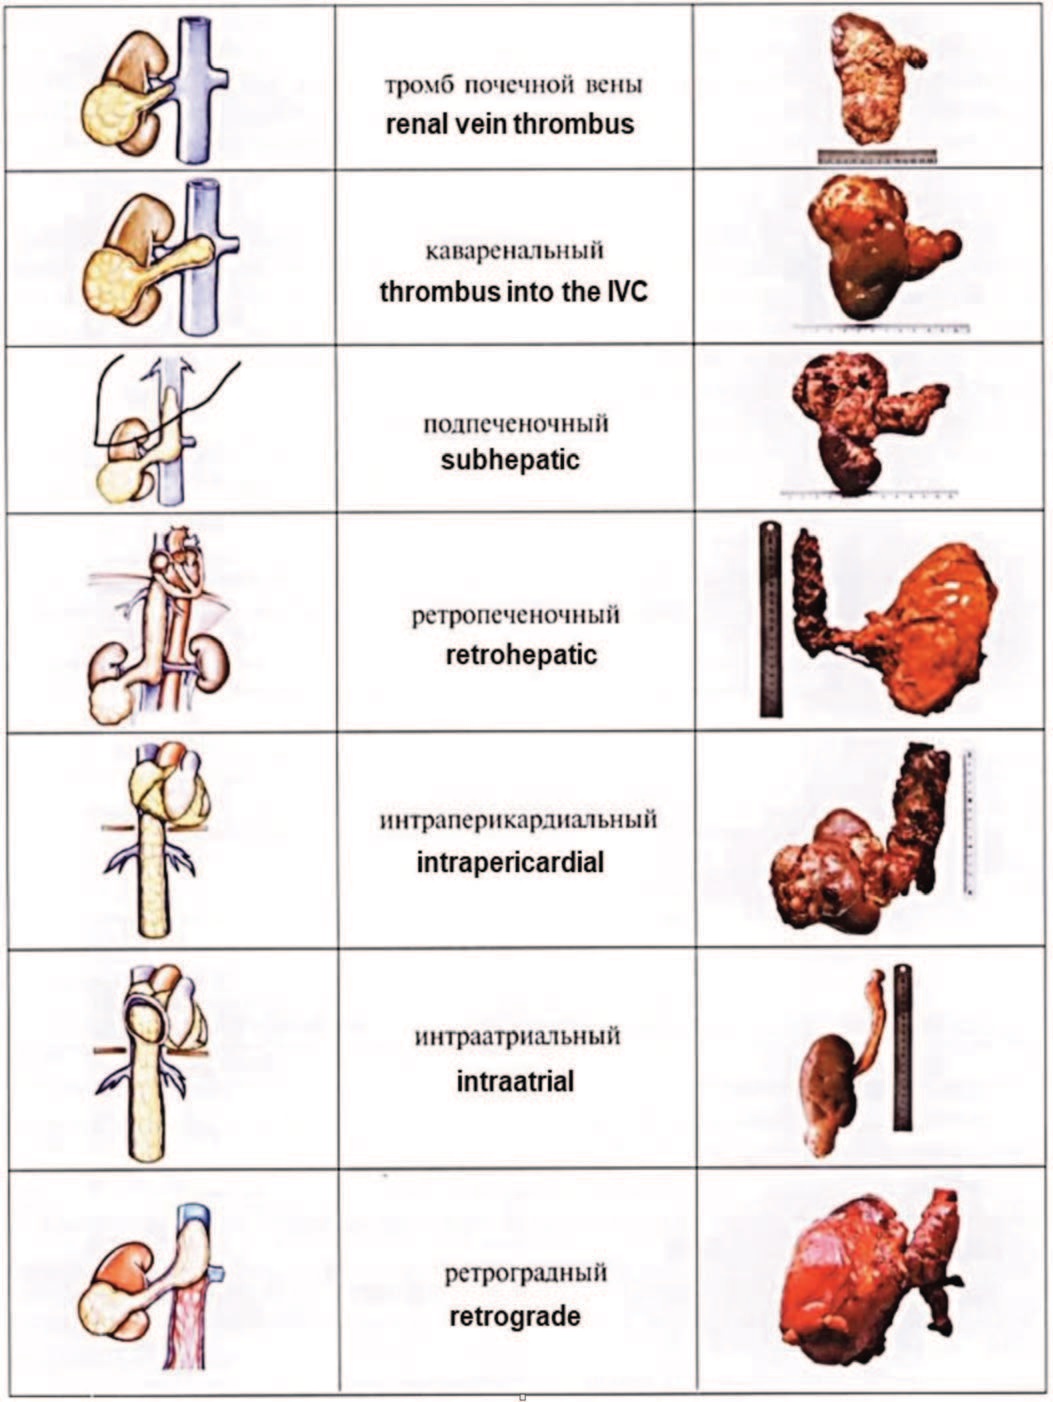  Классификация опухолевых тромбов по А.С. Переверзеву 